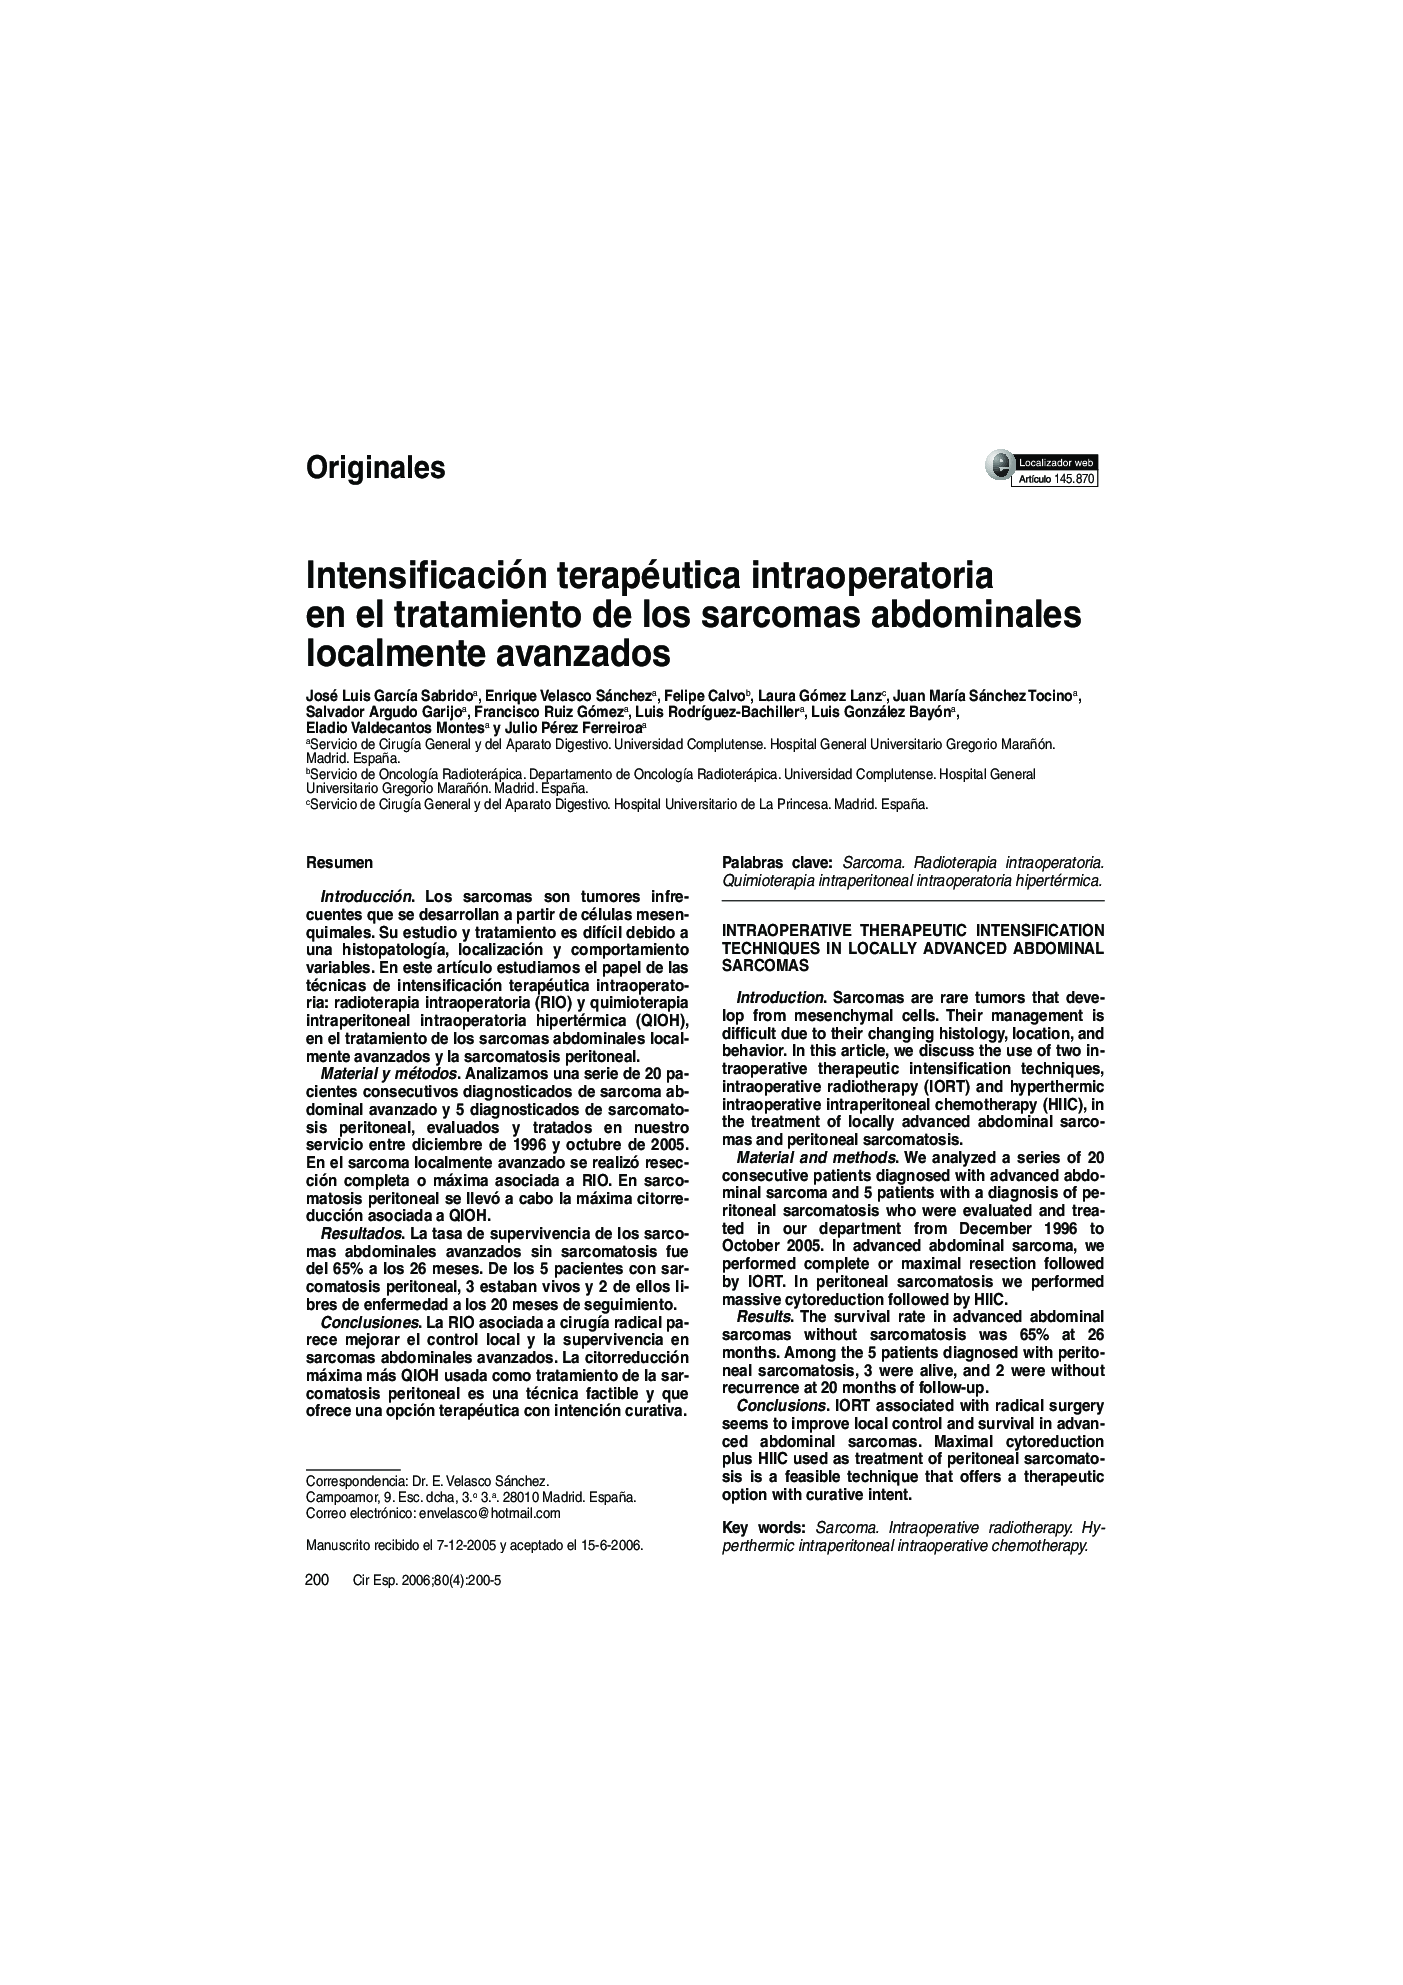 Intensificación terapéutica intraoperatoria en el tratamiento de los sarcomas abdominales localmente avanzados